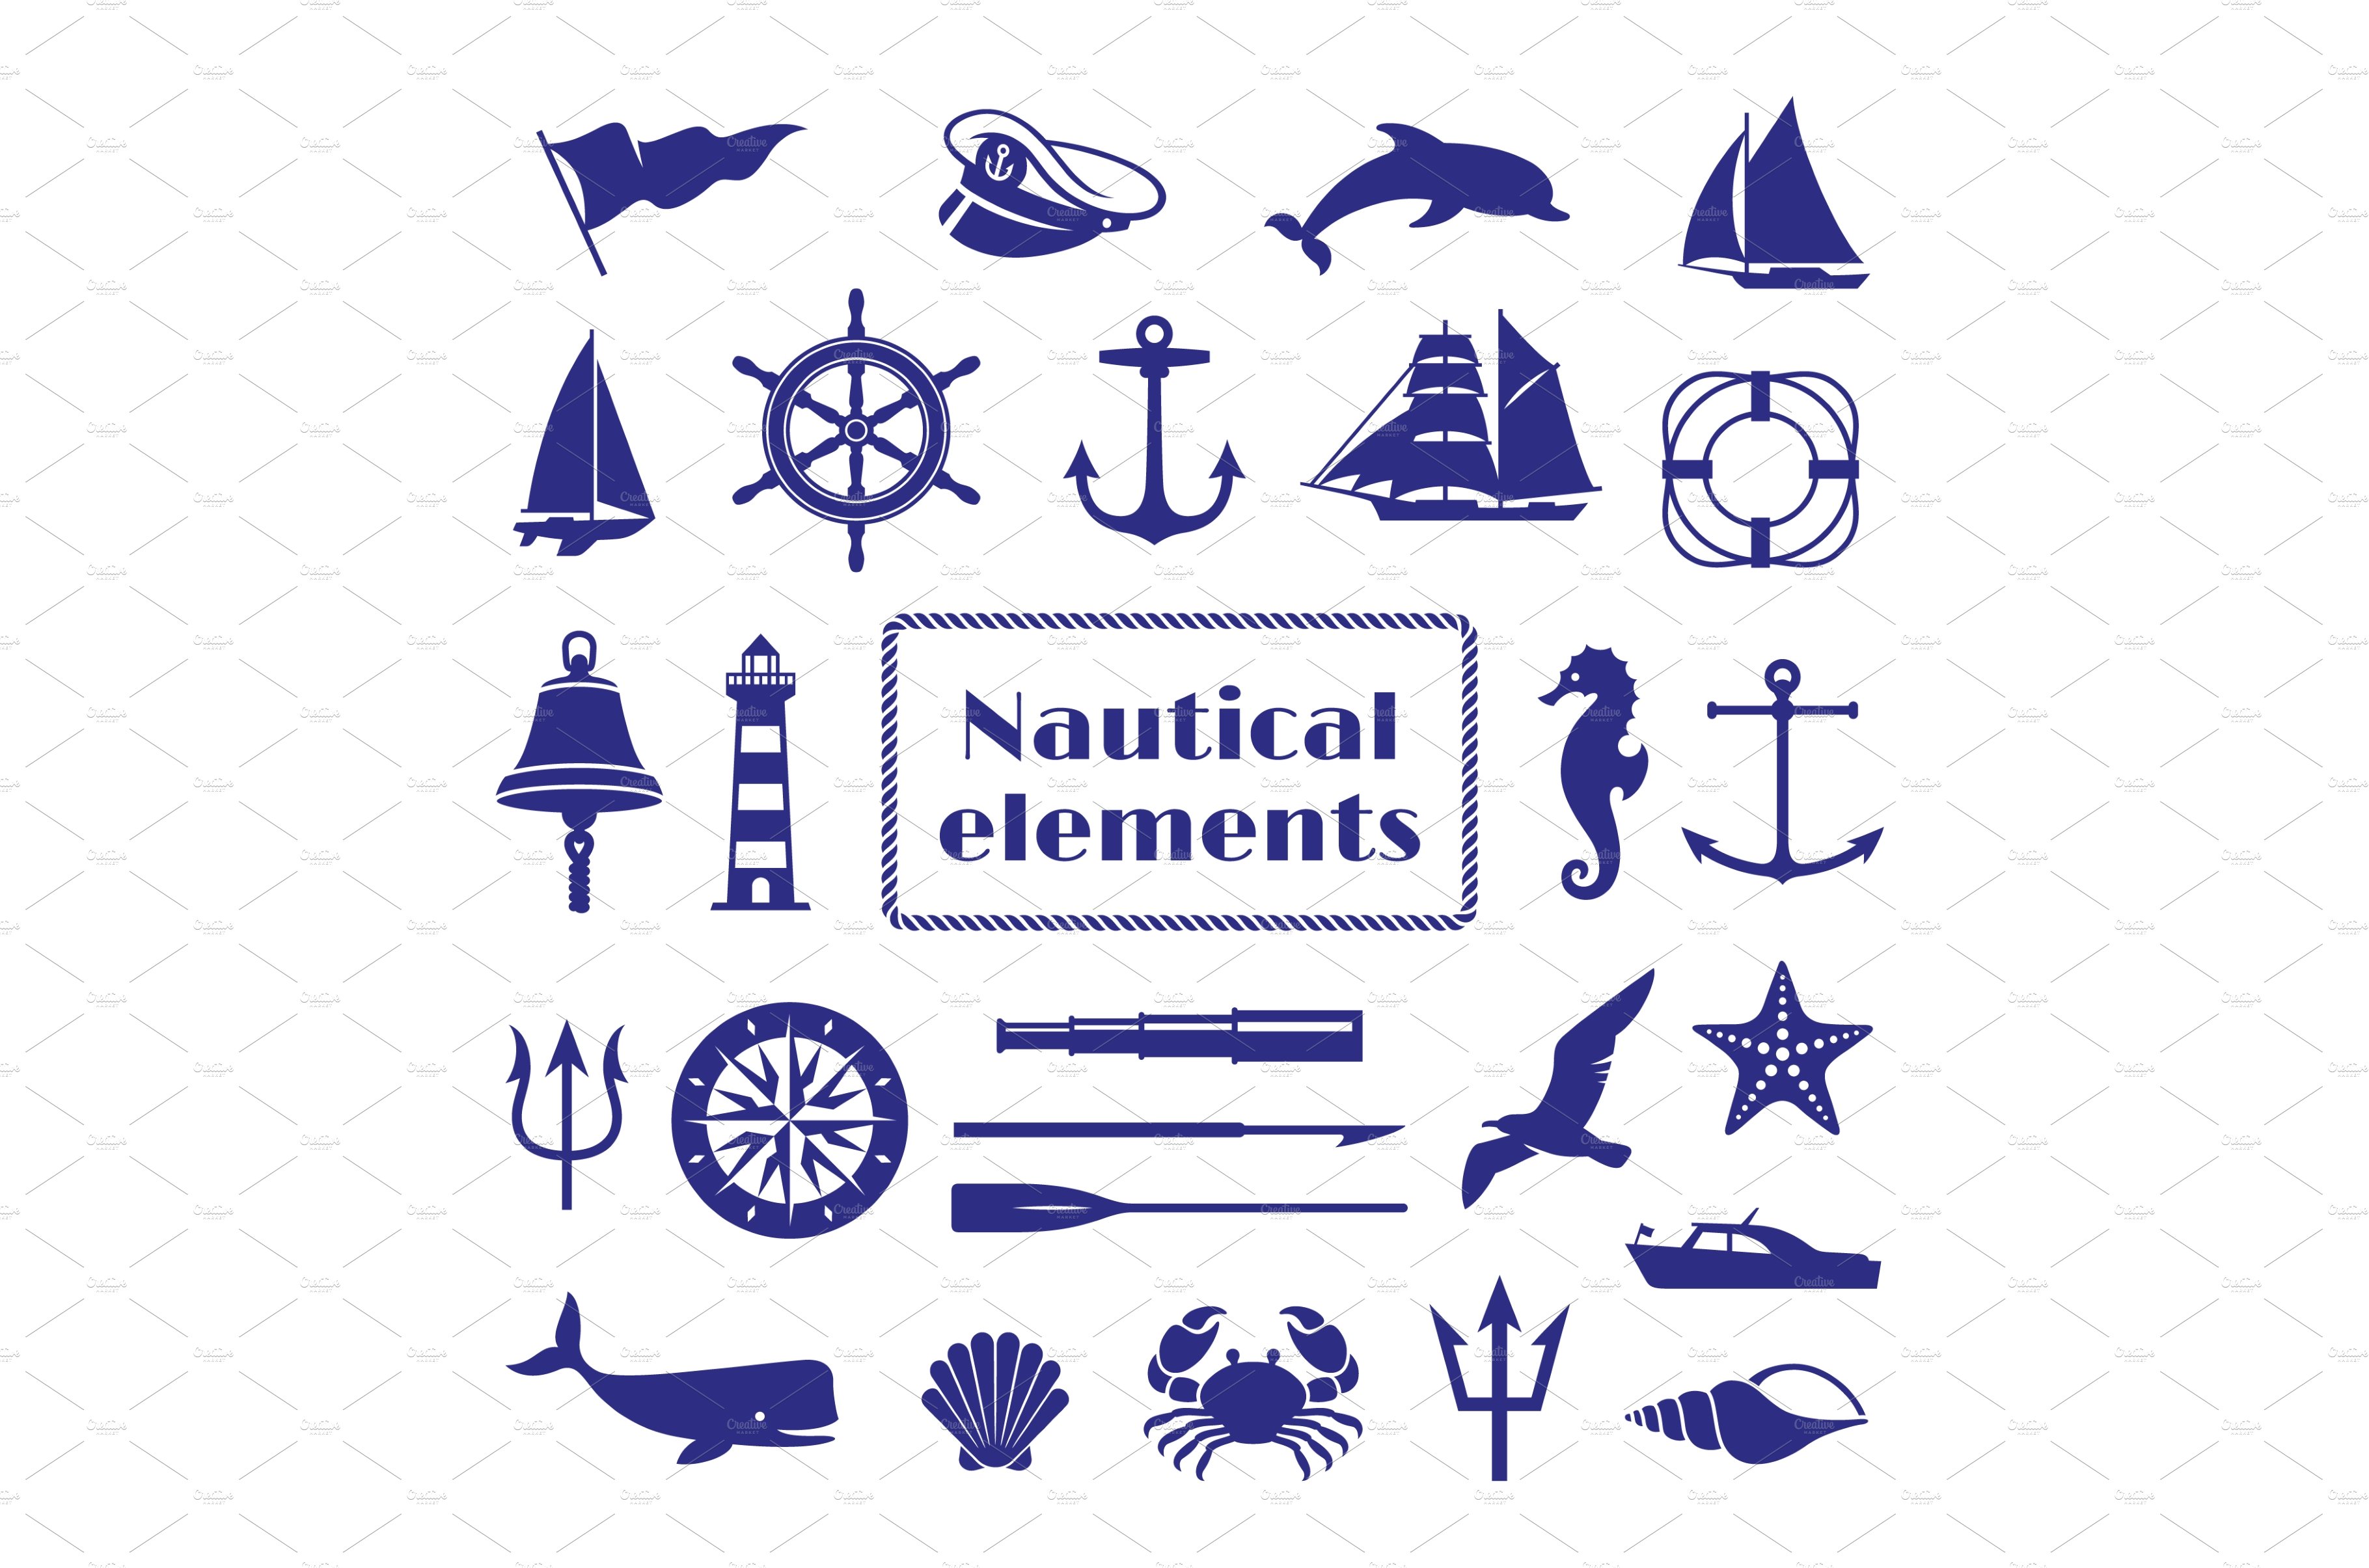 Nautical elements set. Nautic icon cover image.